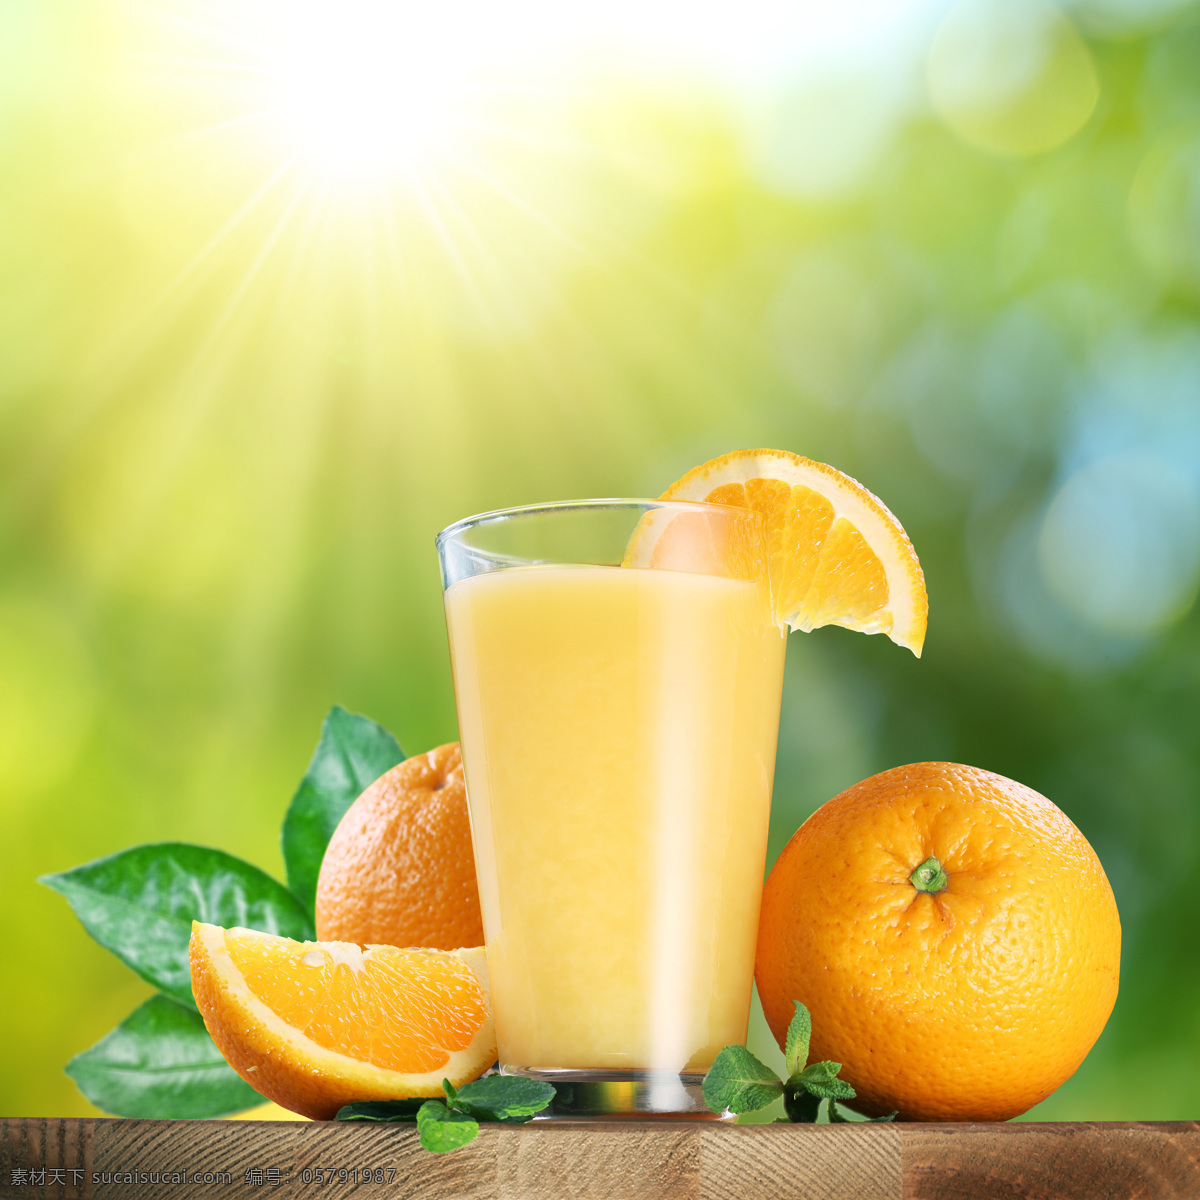 橙汁 鲜榨橙汁 橙子 柳橙汁 果汁 水果 饮料 鲜橙多 饮料酒水 餐饮美食